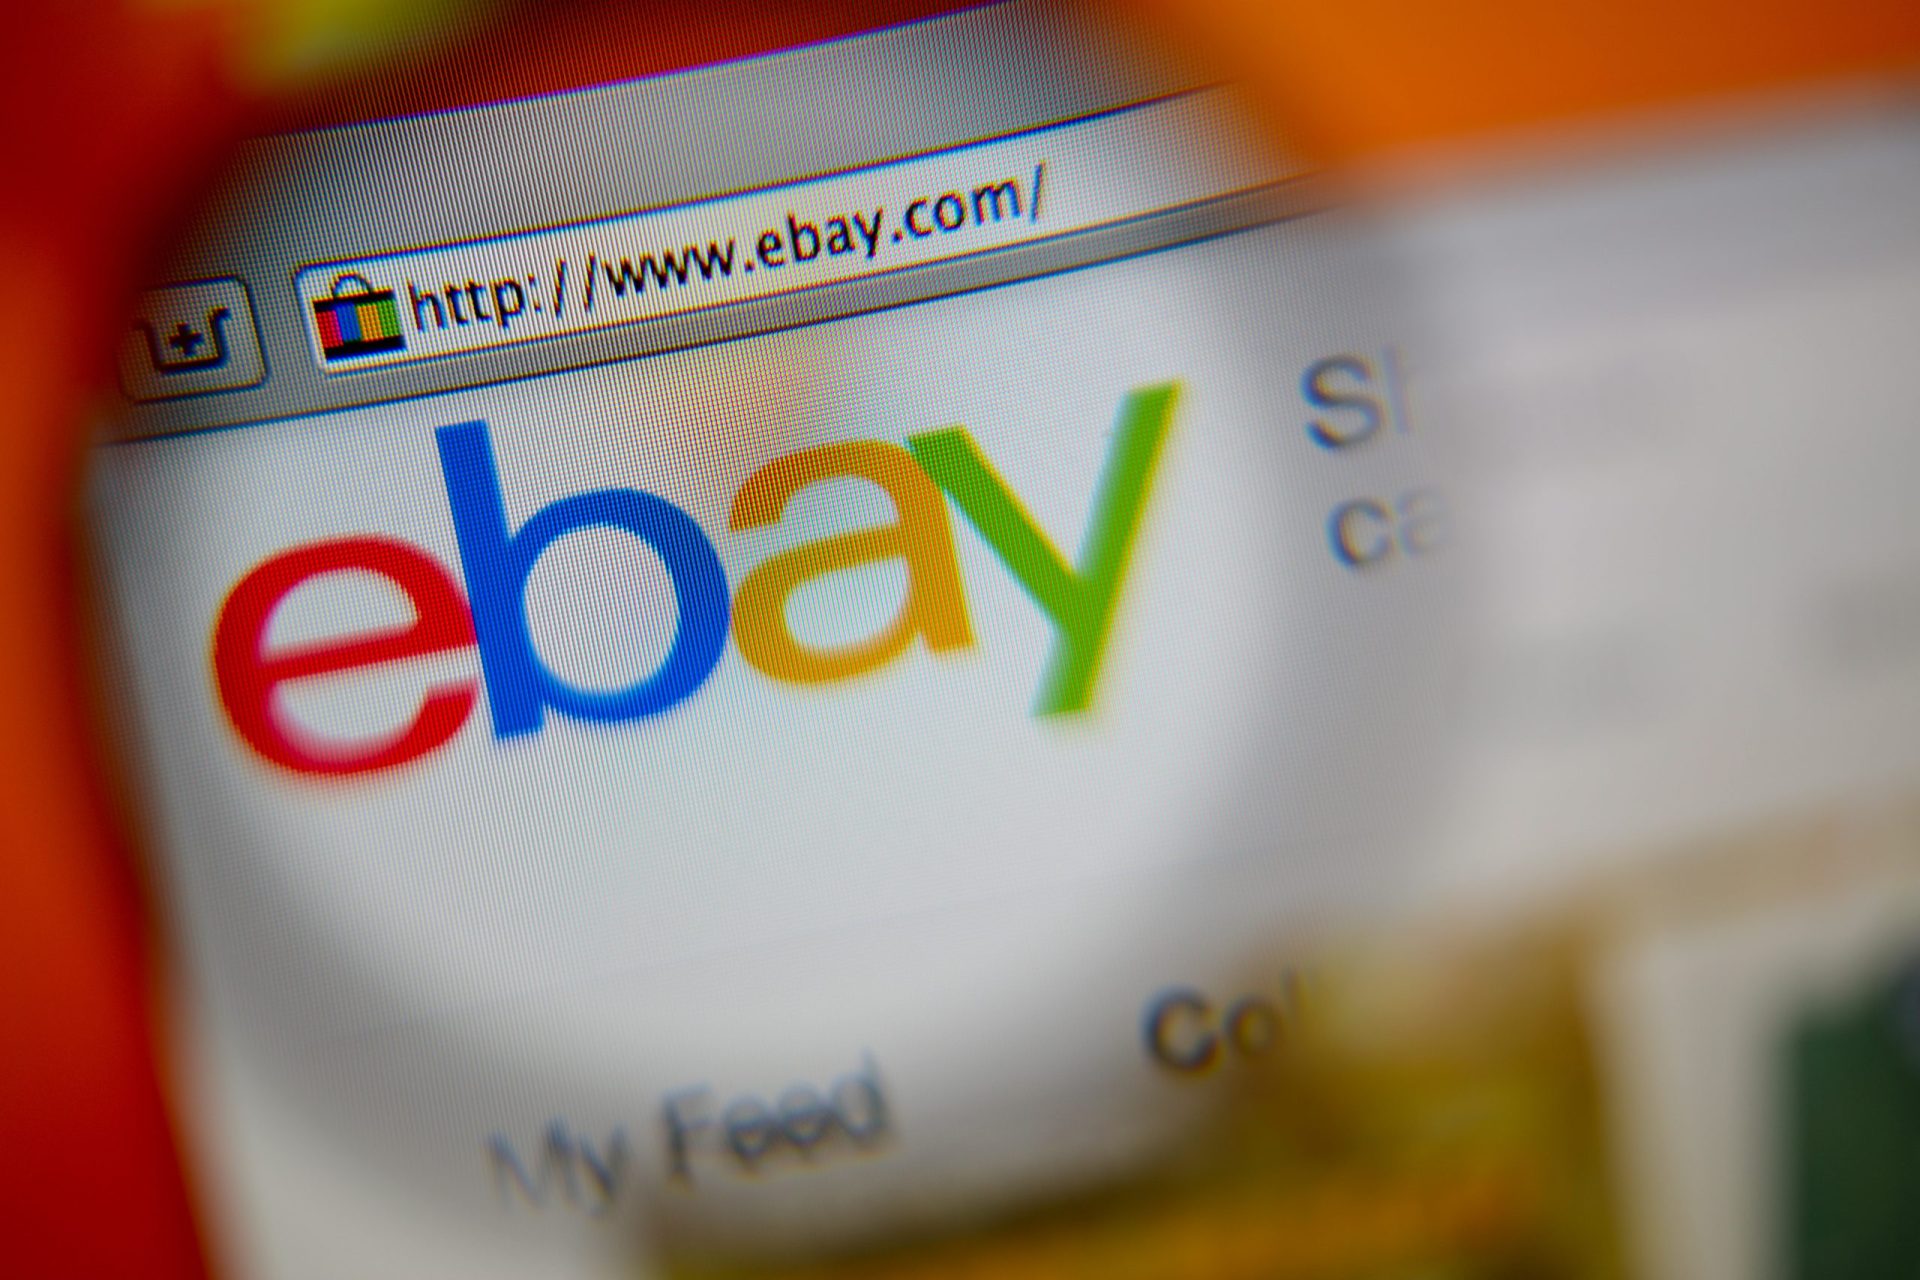 Ebay com grave falha de segurança